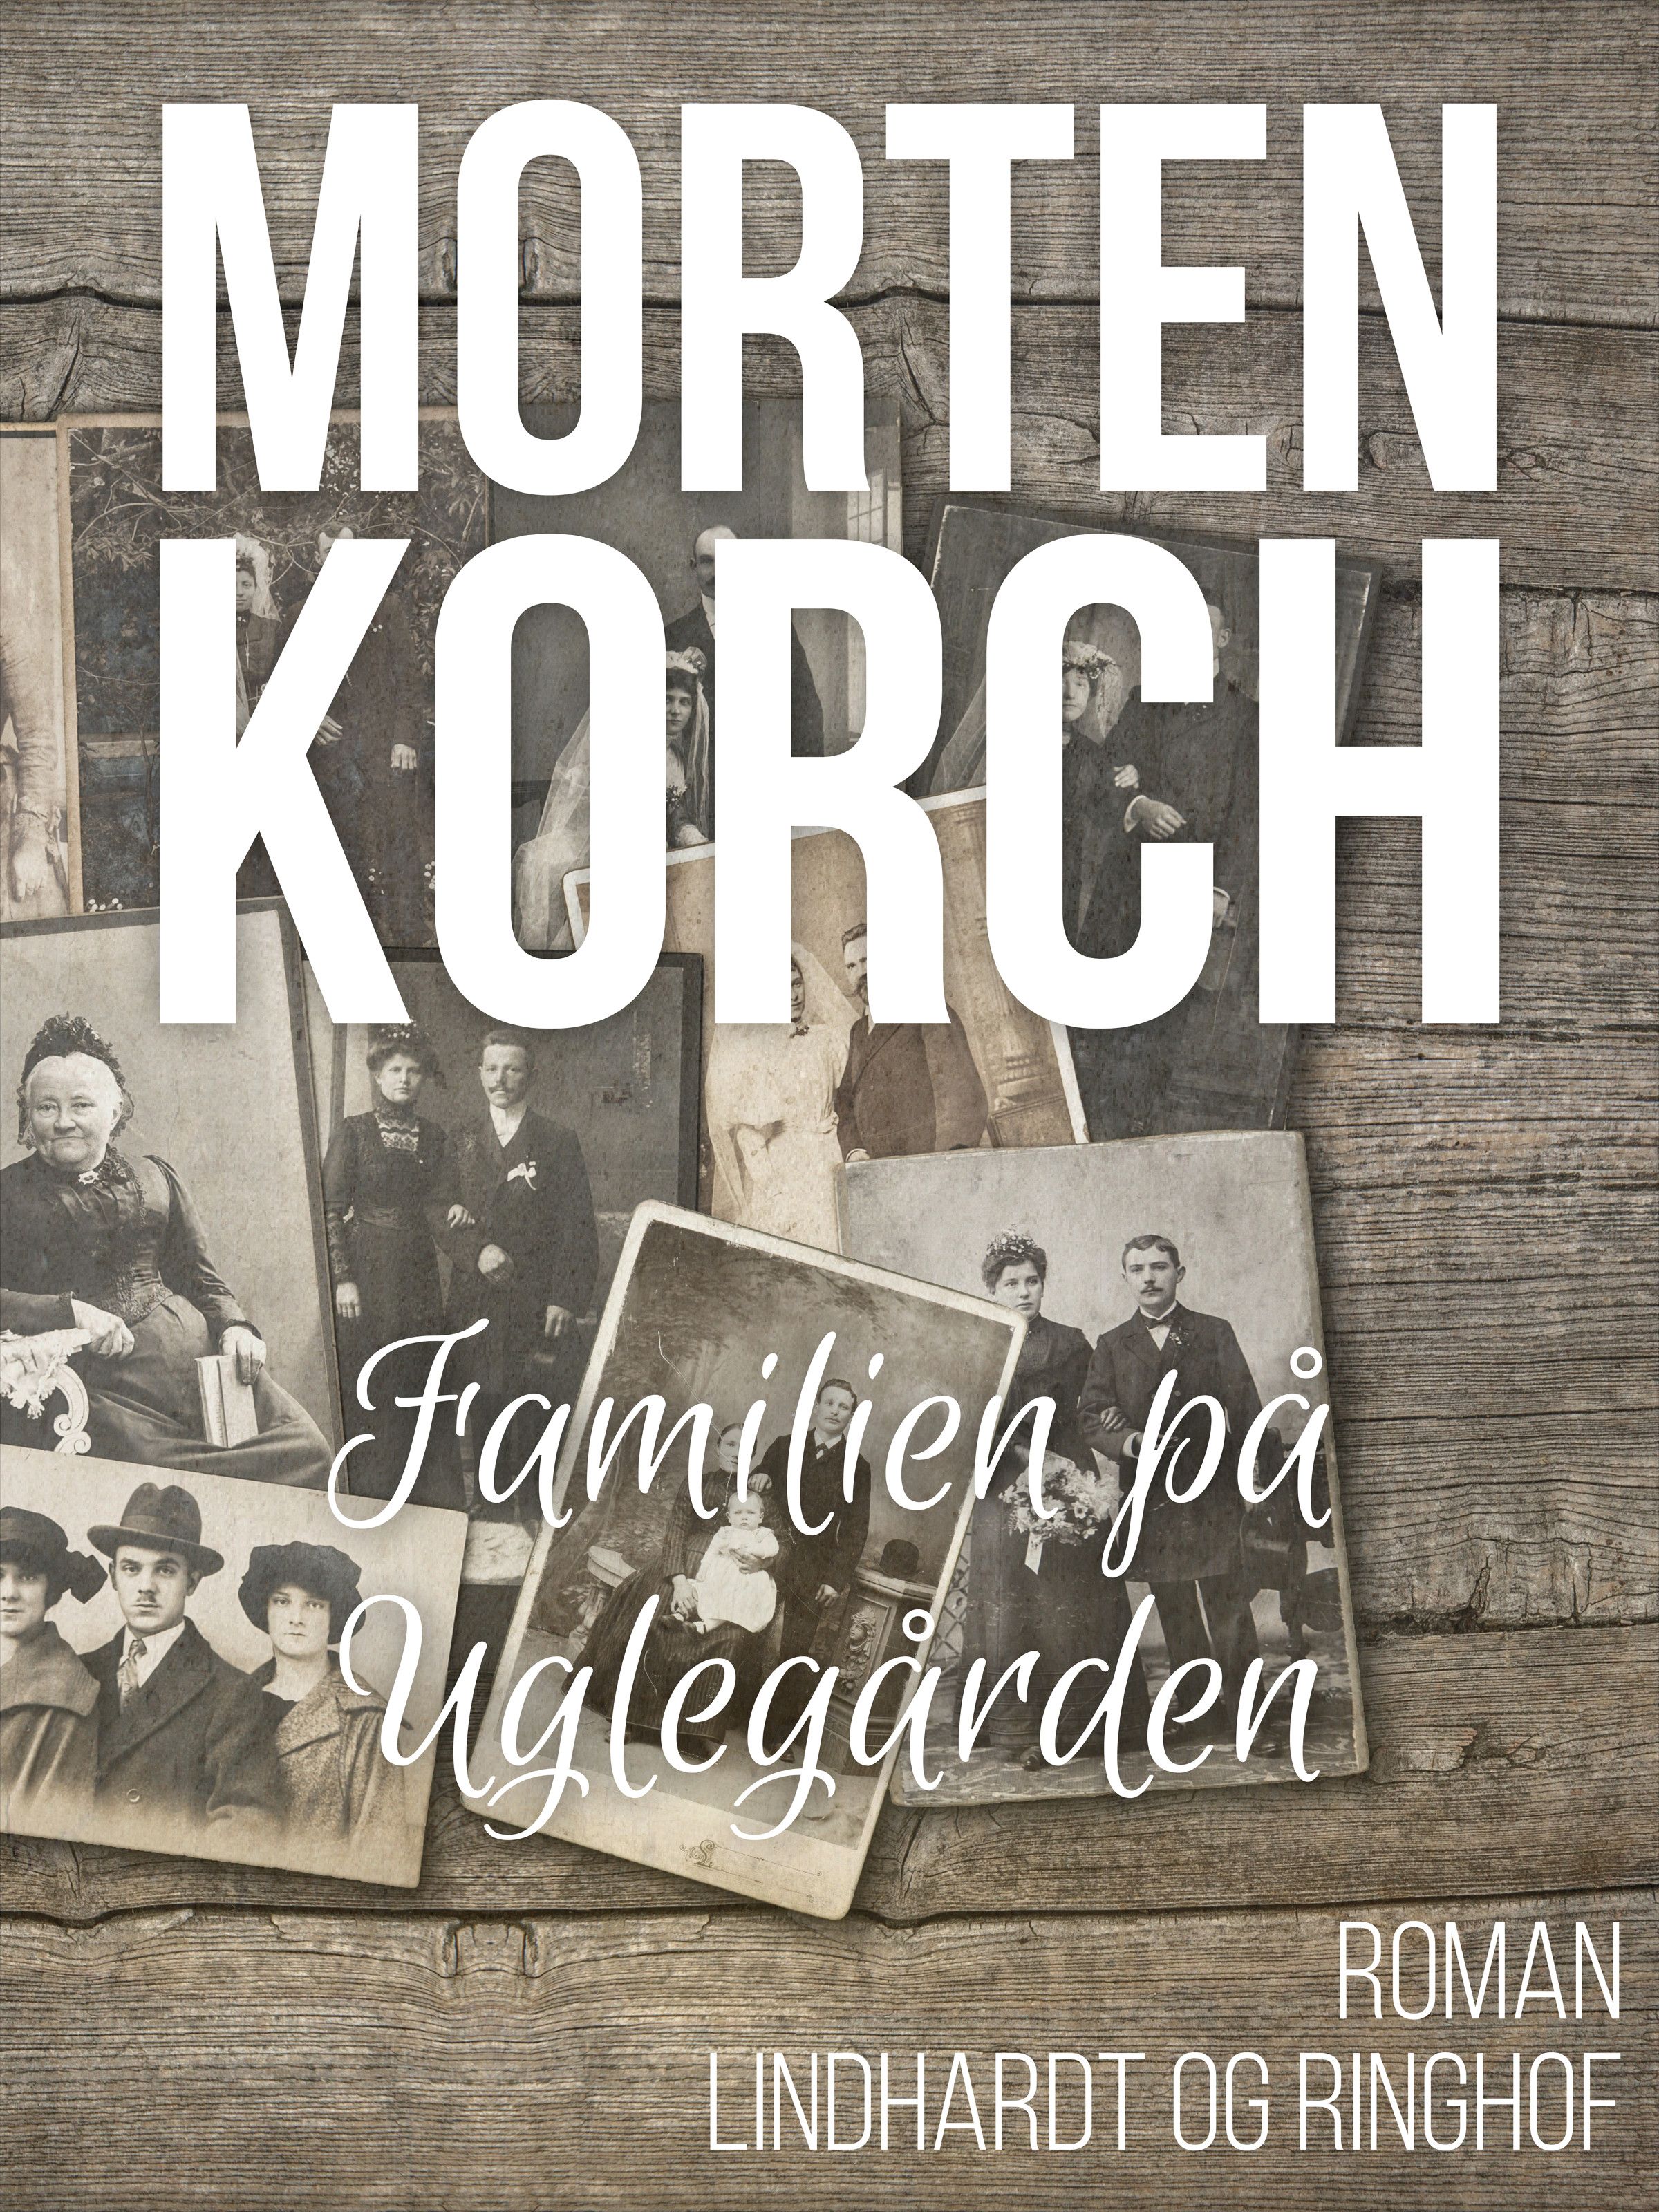 Familien på Uglegården, ljudbok av Morten Korch